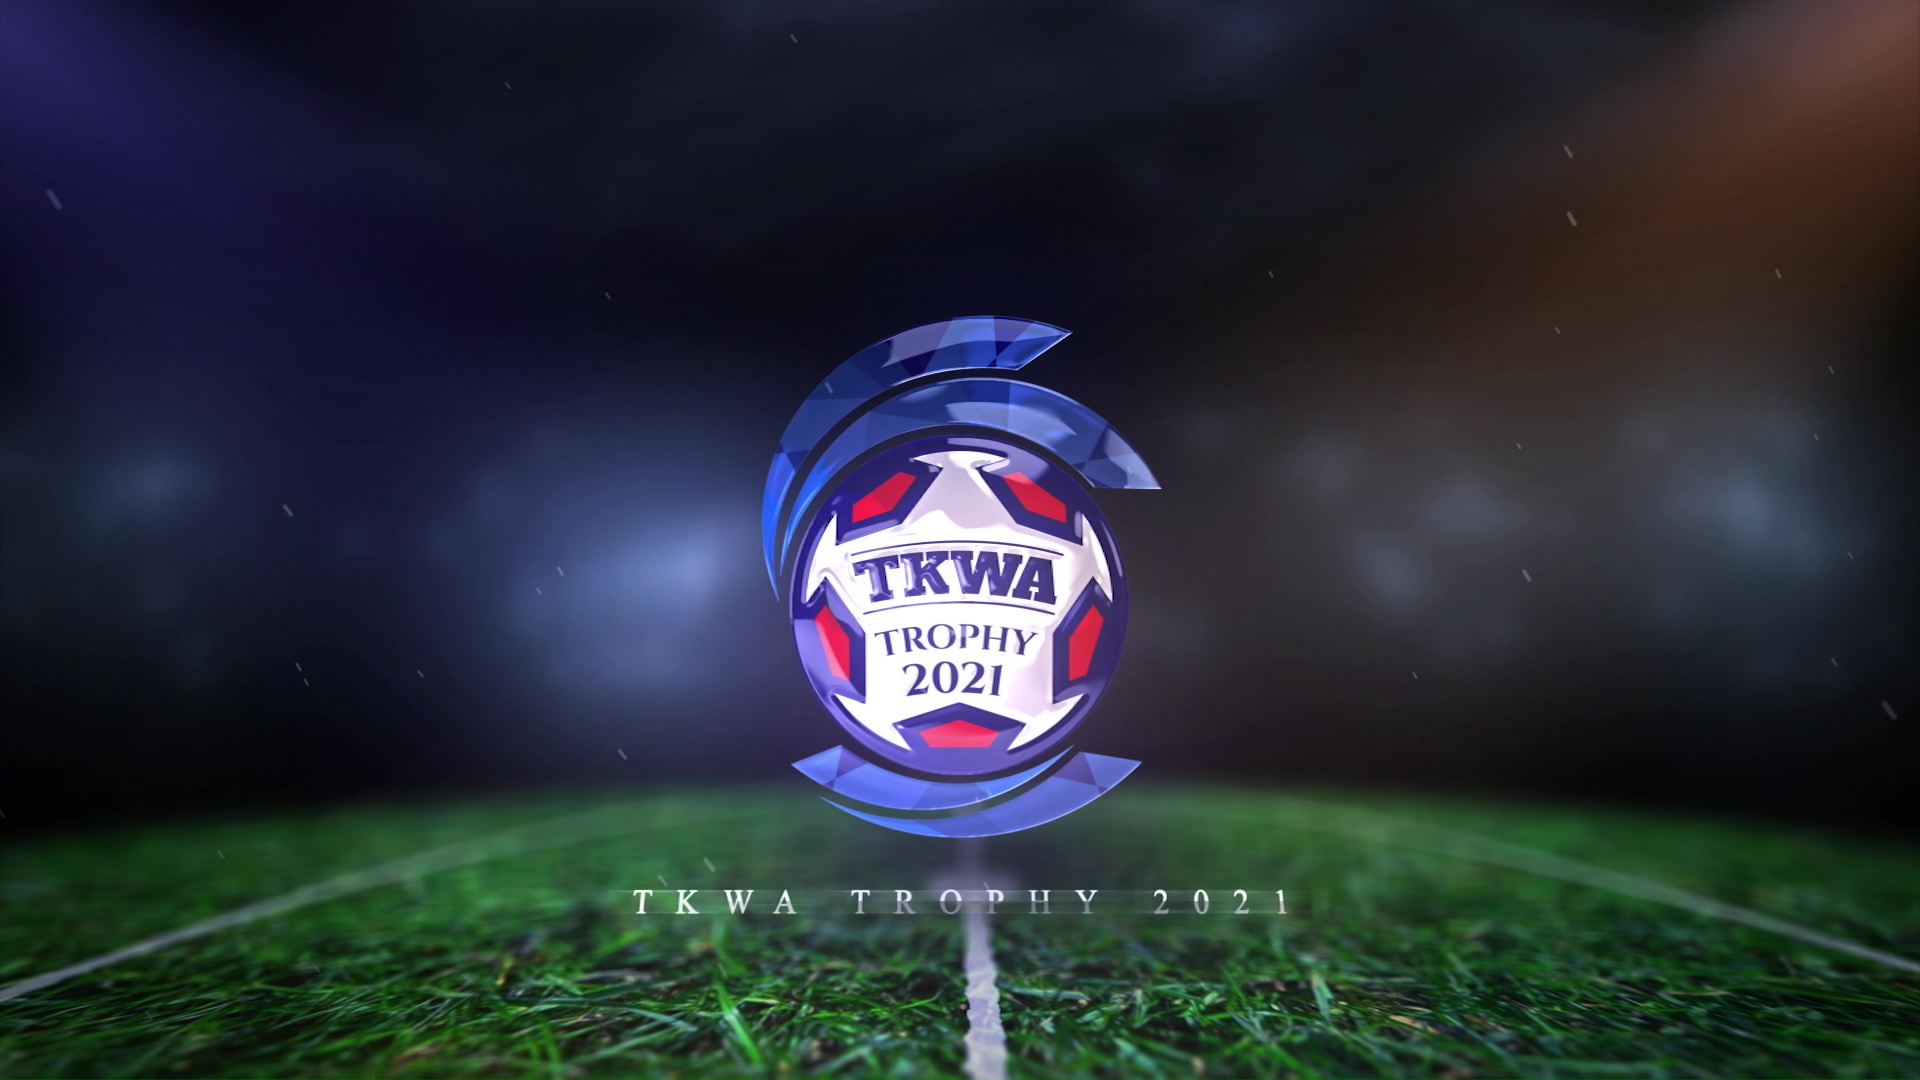 TKWA TROPHY 2021 OPENING